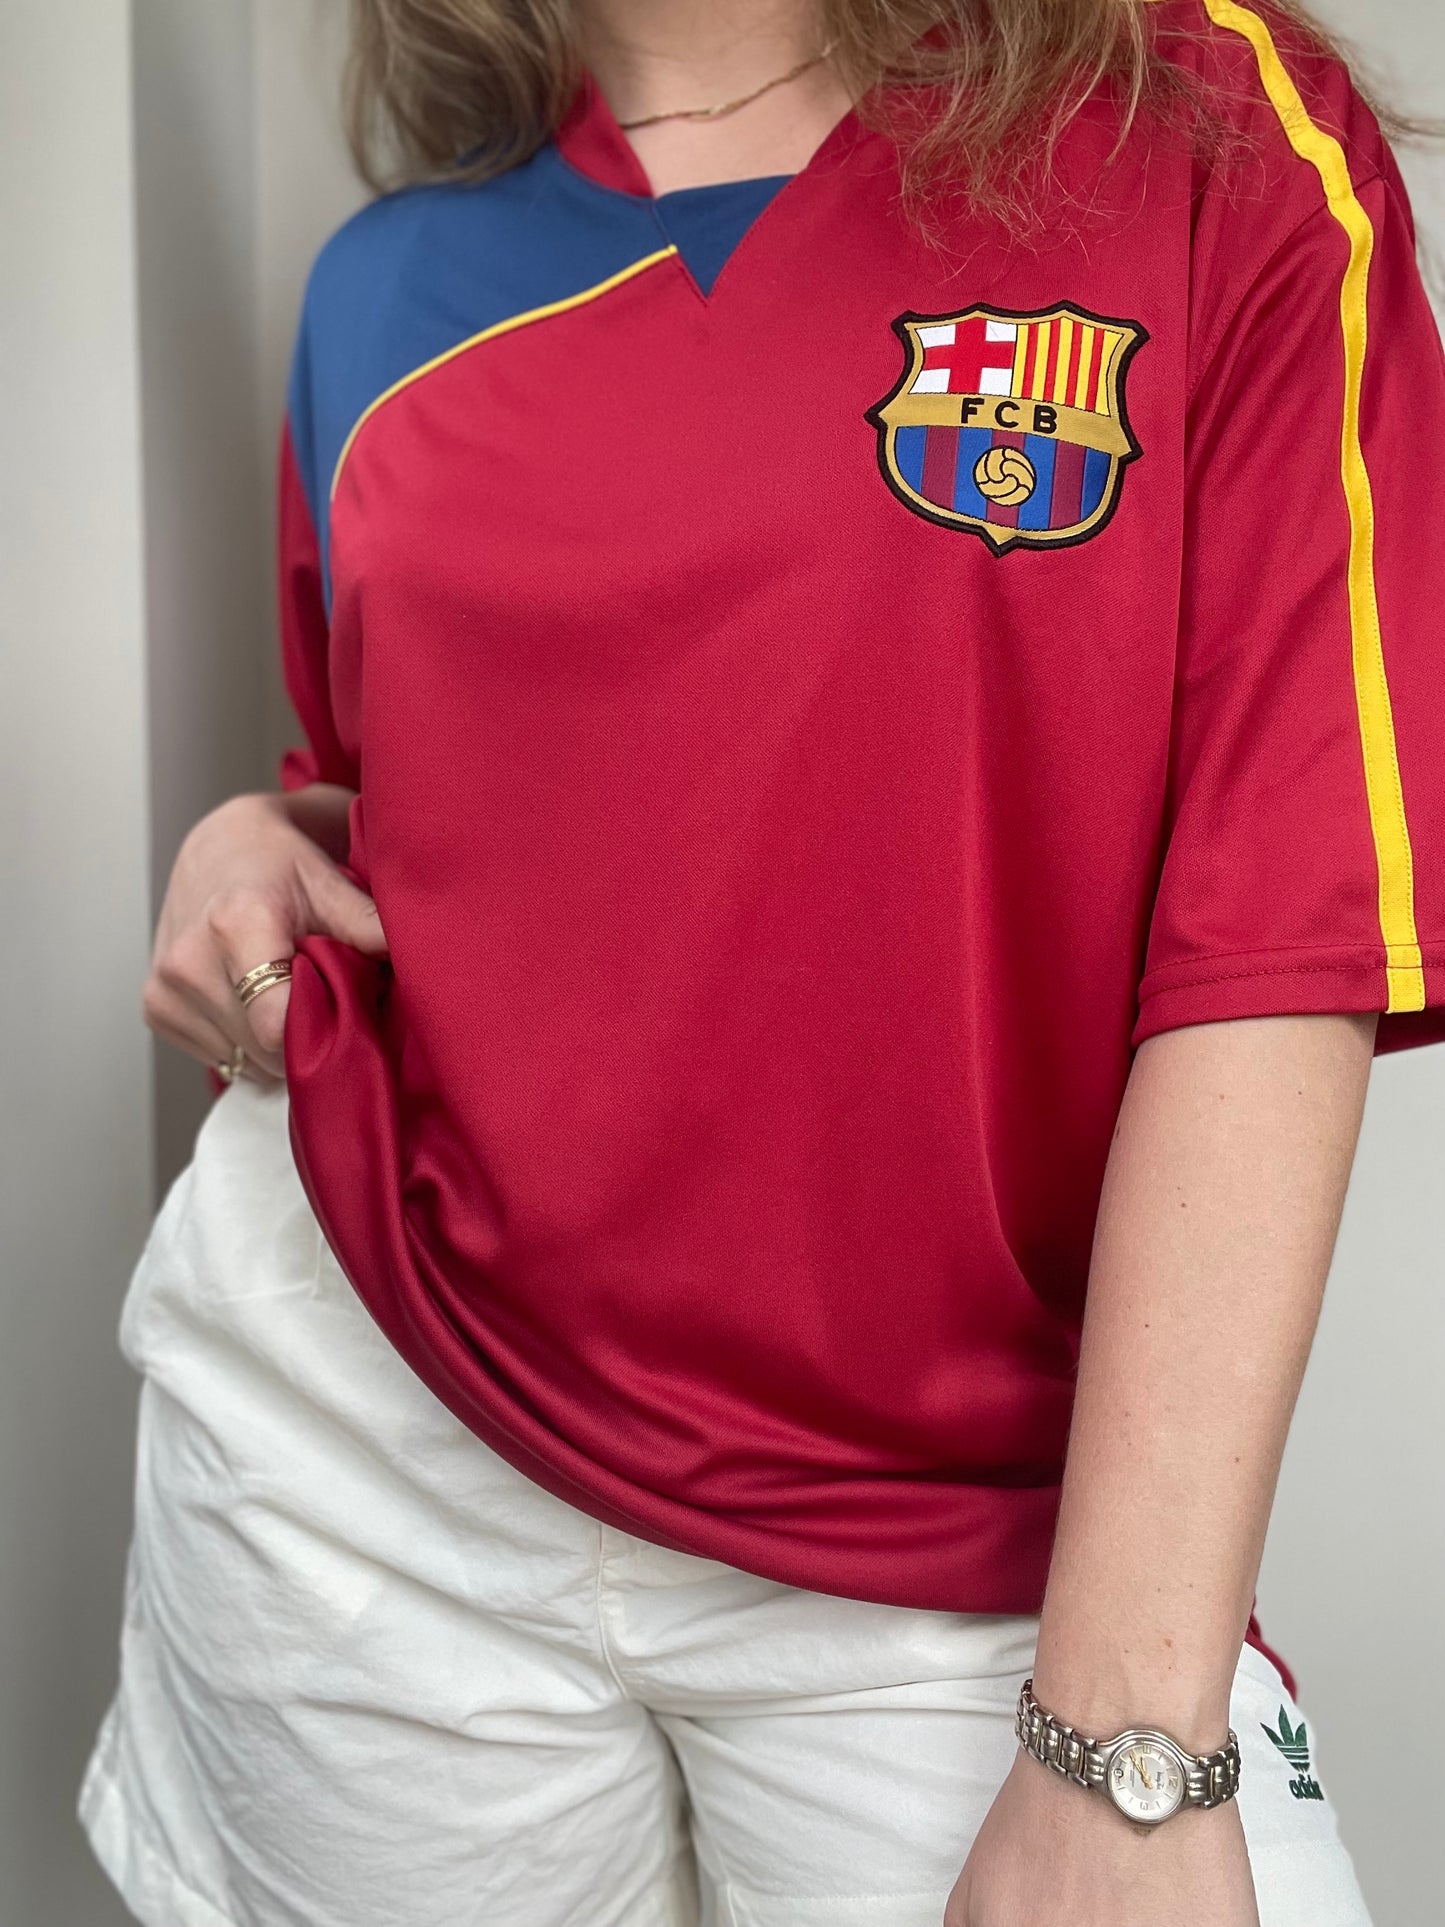 Pre-loved FC Barcelona soccer jersey